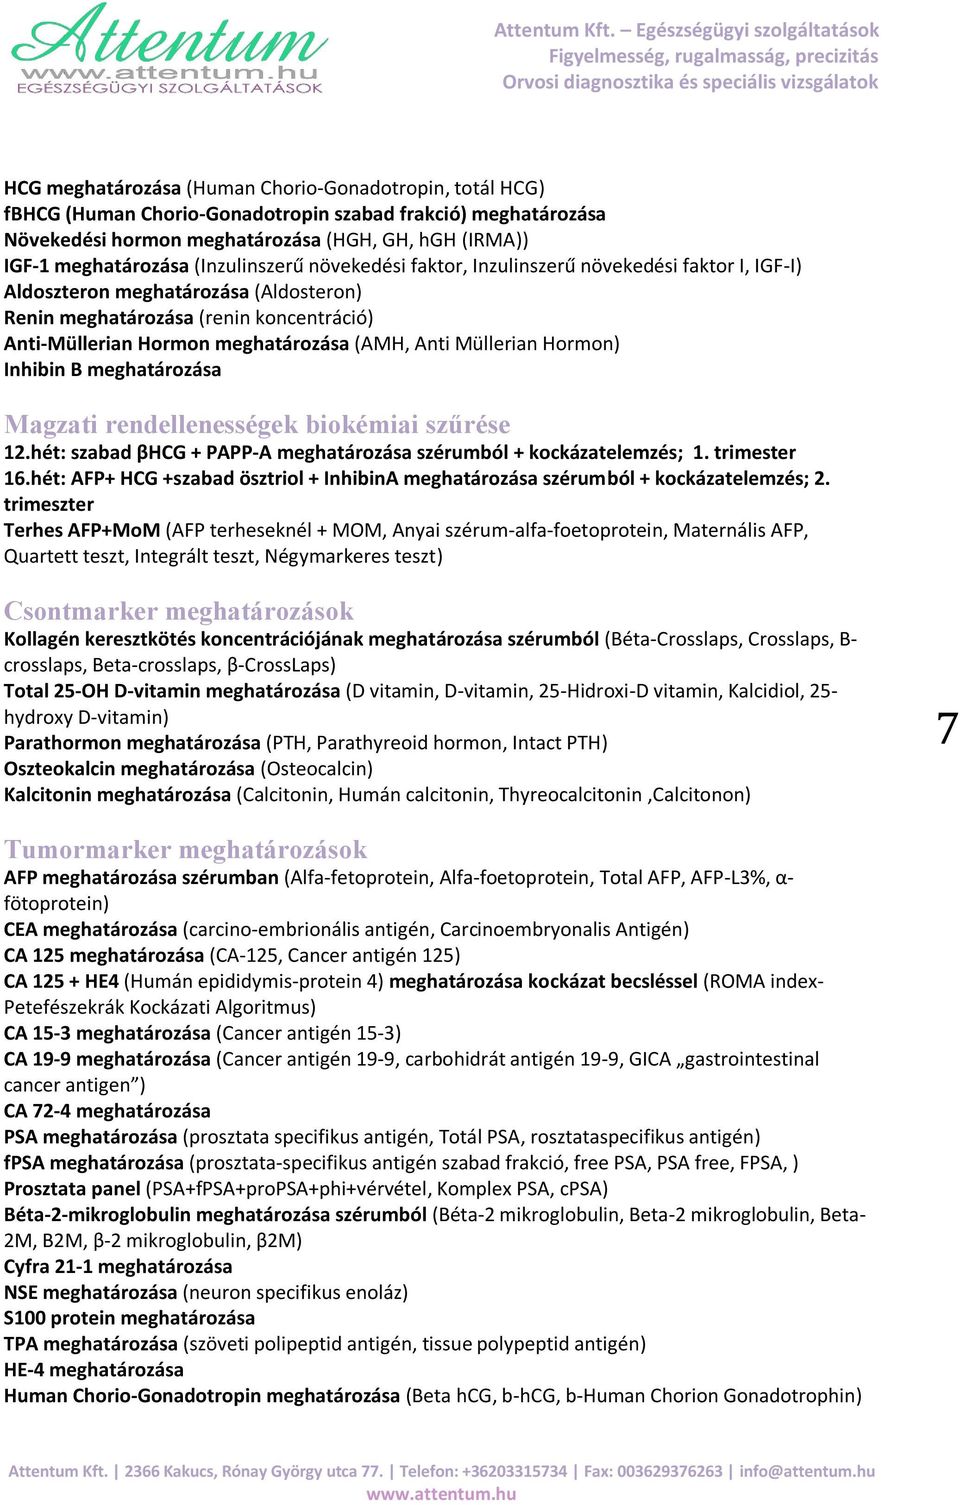 Anti Müllerian Hormon) Inhibin B meghatározása Magzati rendellenességek biokémiai szűrése 12.hét: szabad βhcg + PAPP-A meghatározása szérumból + kockázatelemzés; 1. trimester 16.